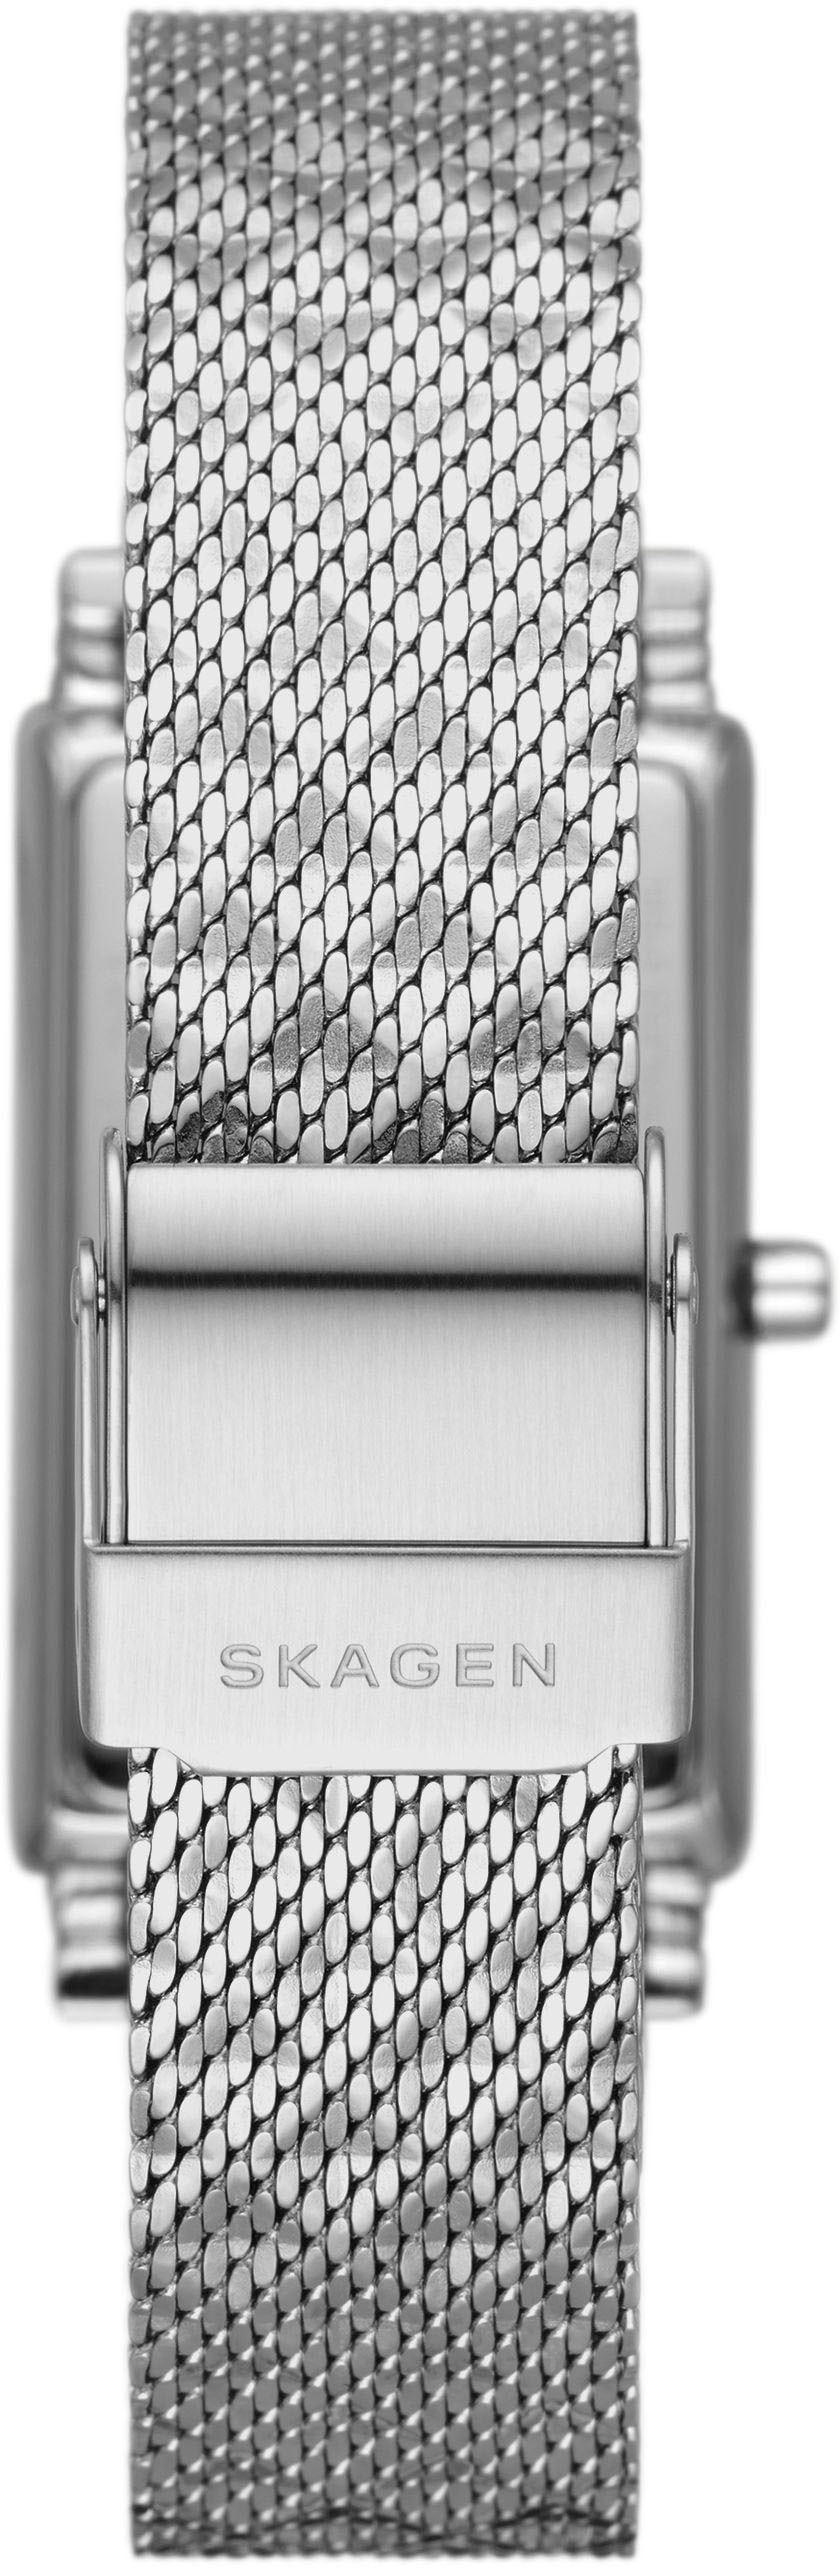 Skagen Quarzuhr »HAGEN, SKW3115«, Armbanduhr, Damenuhr, analog